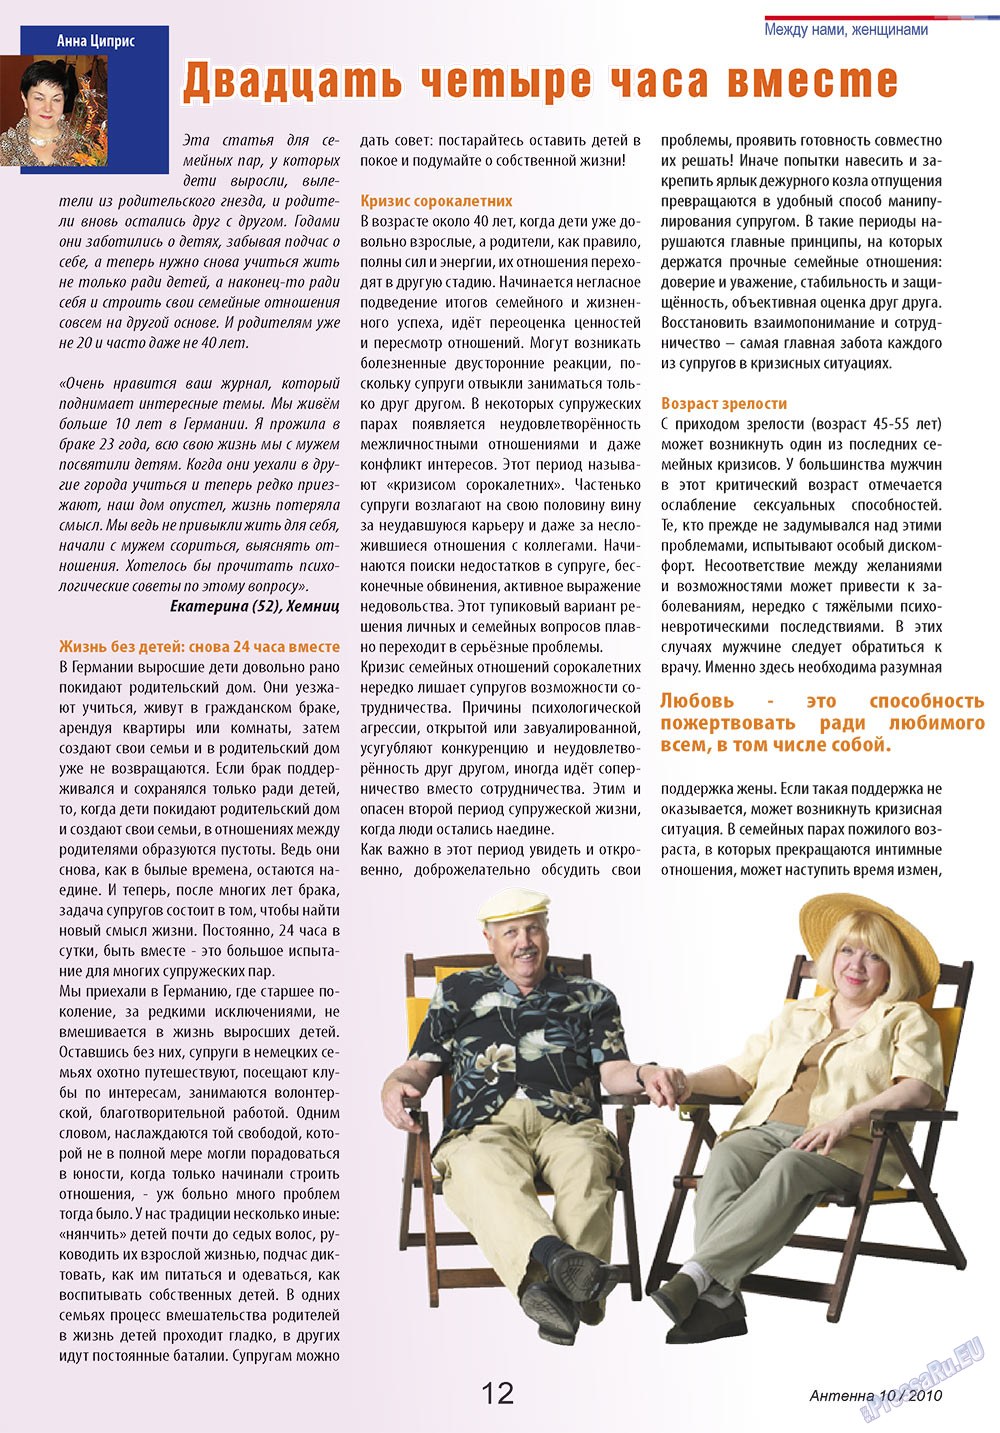 Антенна, журнал. 2010 №10 стр.12